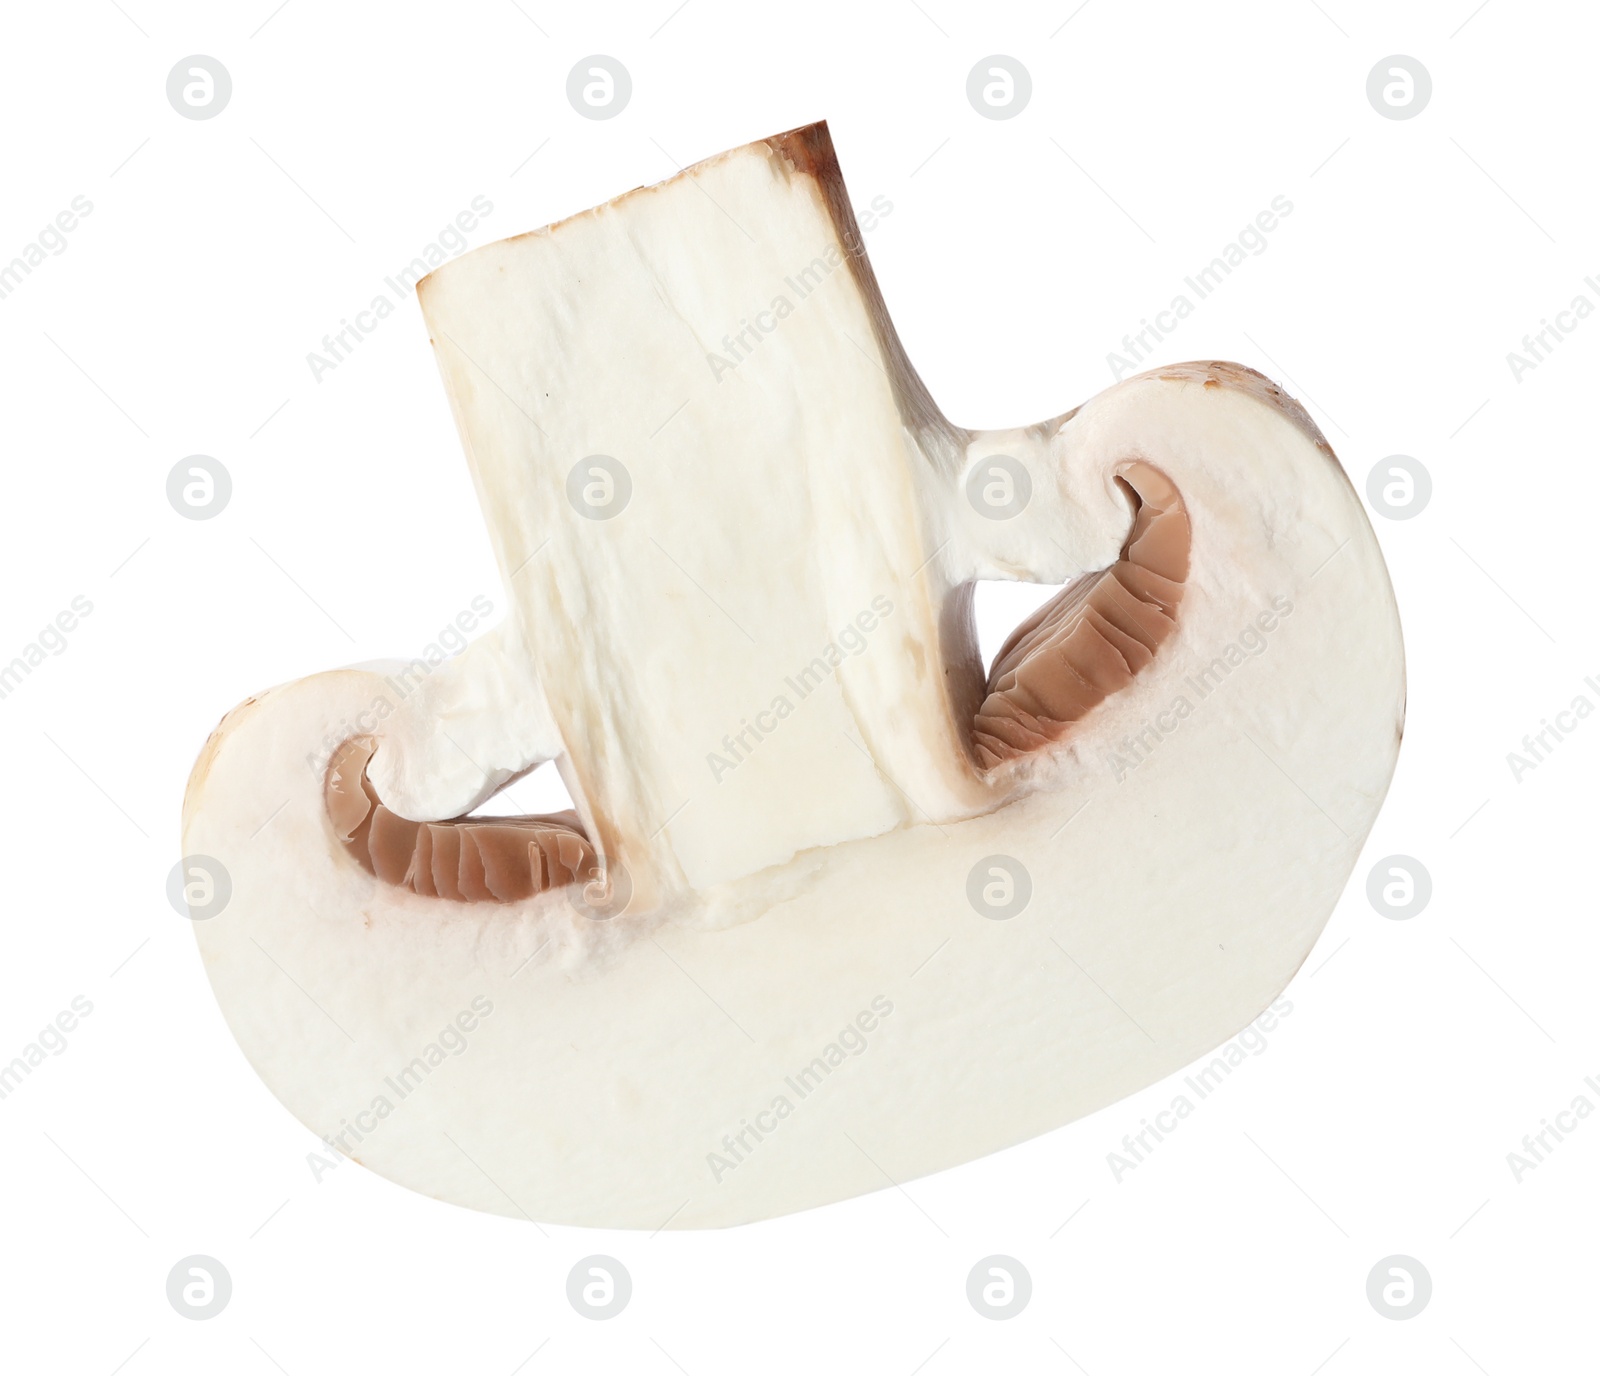 Photo of Piece of fresh mushroom on white background